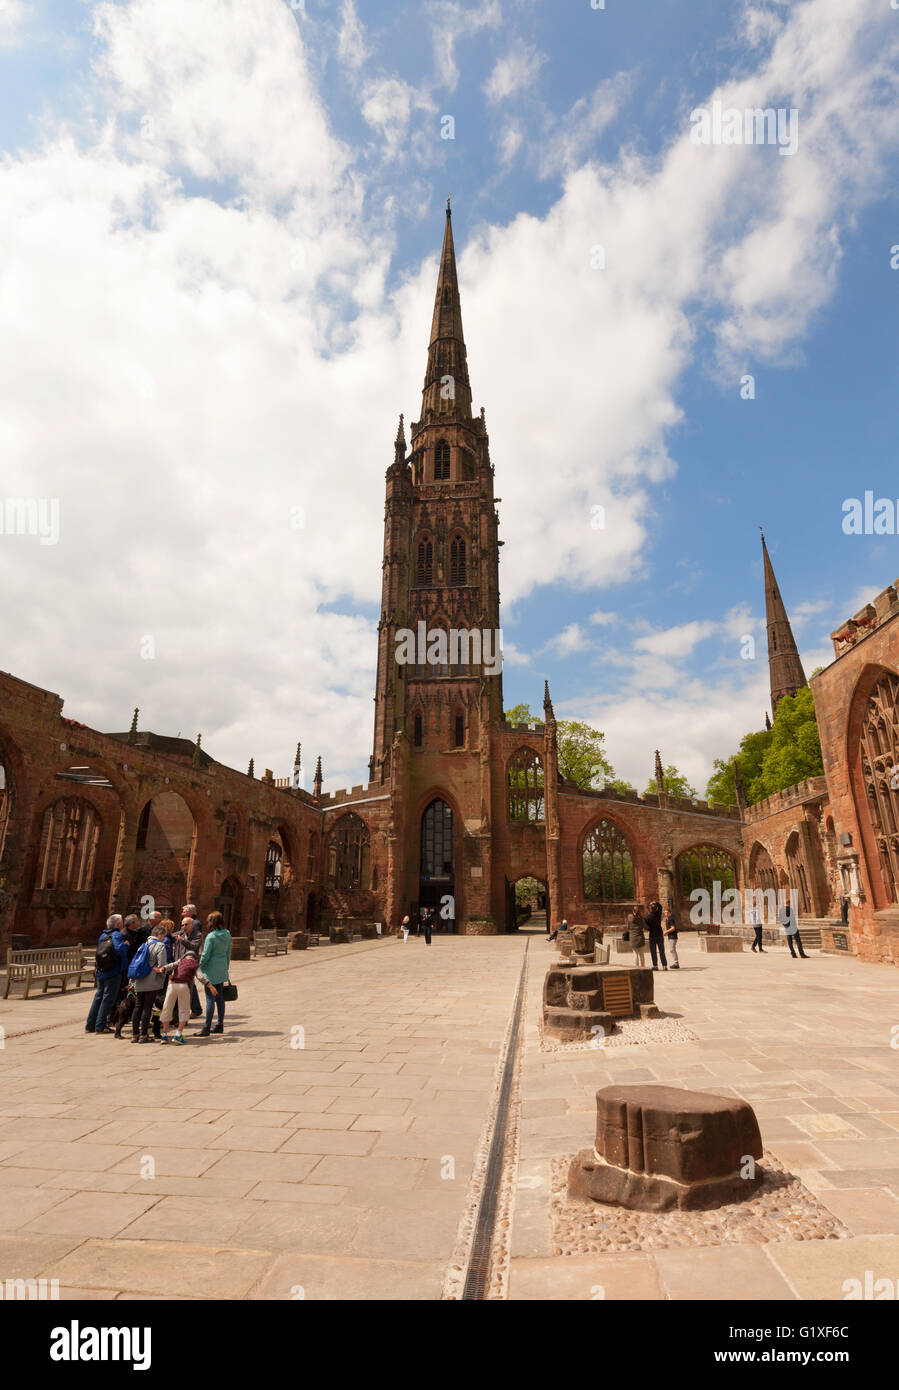 Persone che guardano la guglia in rovina della vecchia St Michael's Cathedral, Coventry; bombardato in WW2; Coventry city centre, Warwickshire, Regno Unito Foto Stock